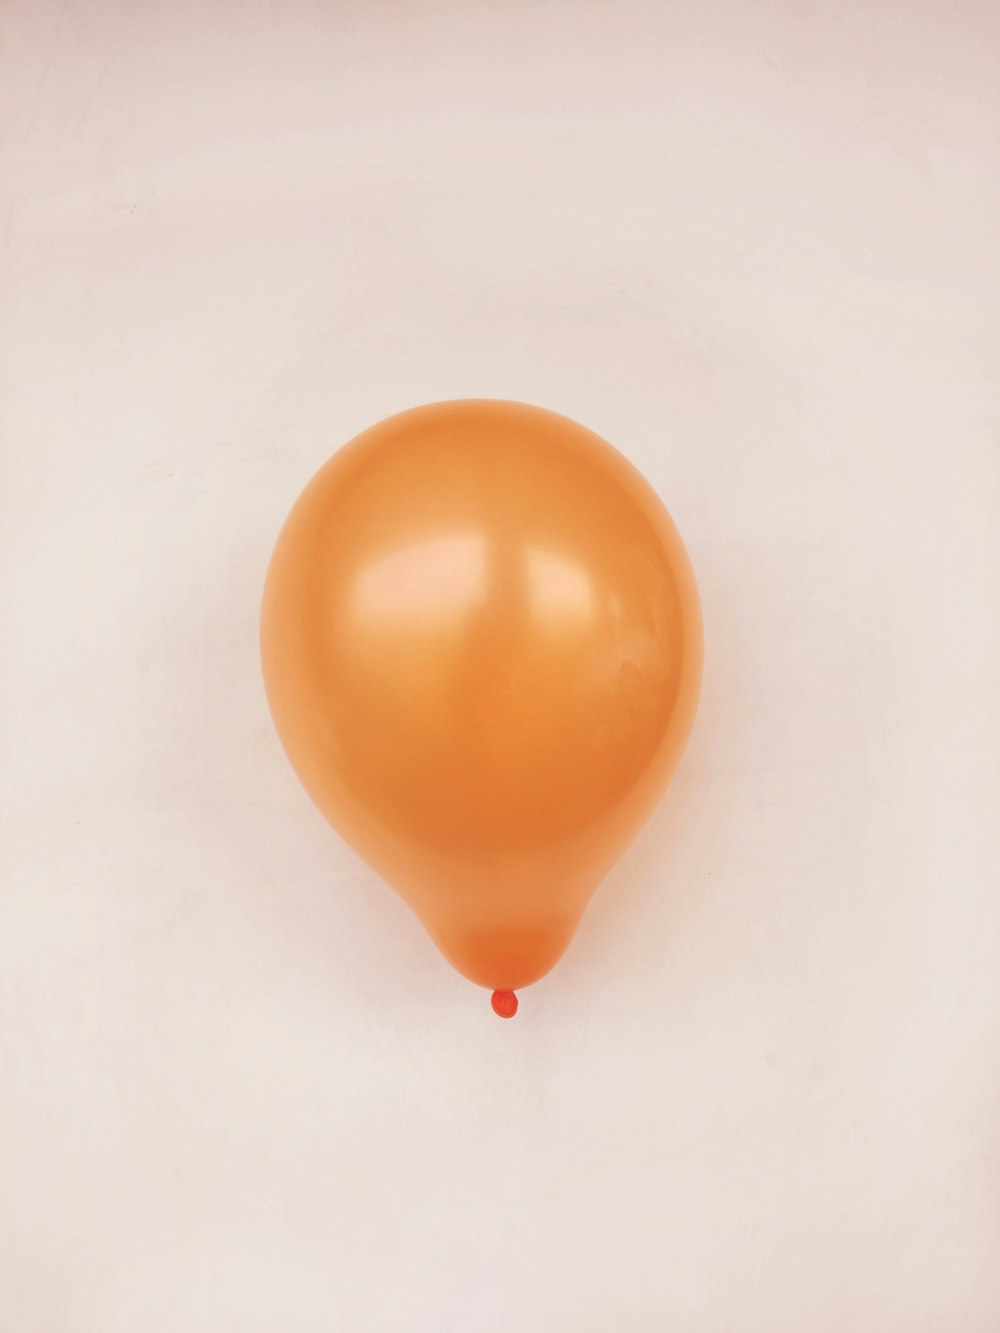 orange balloon on white surface